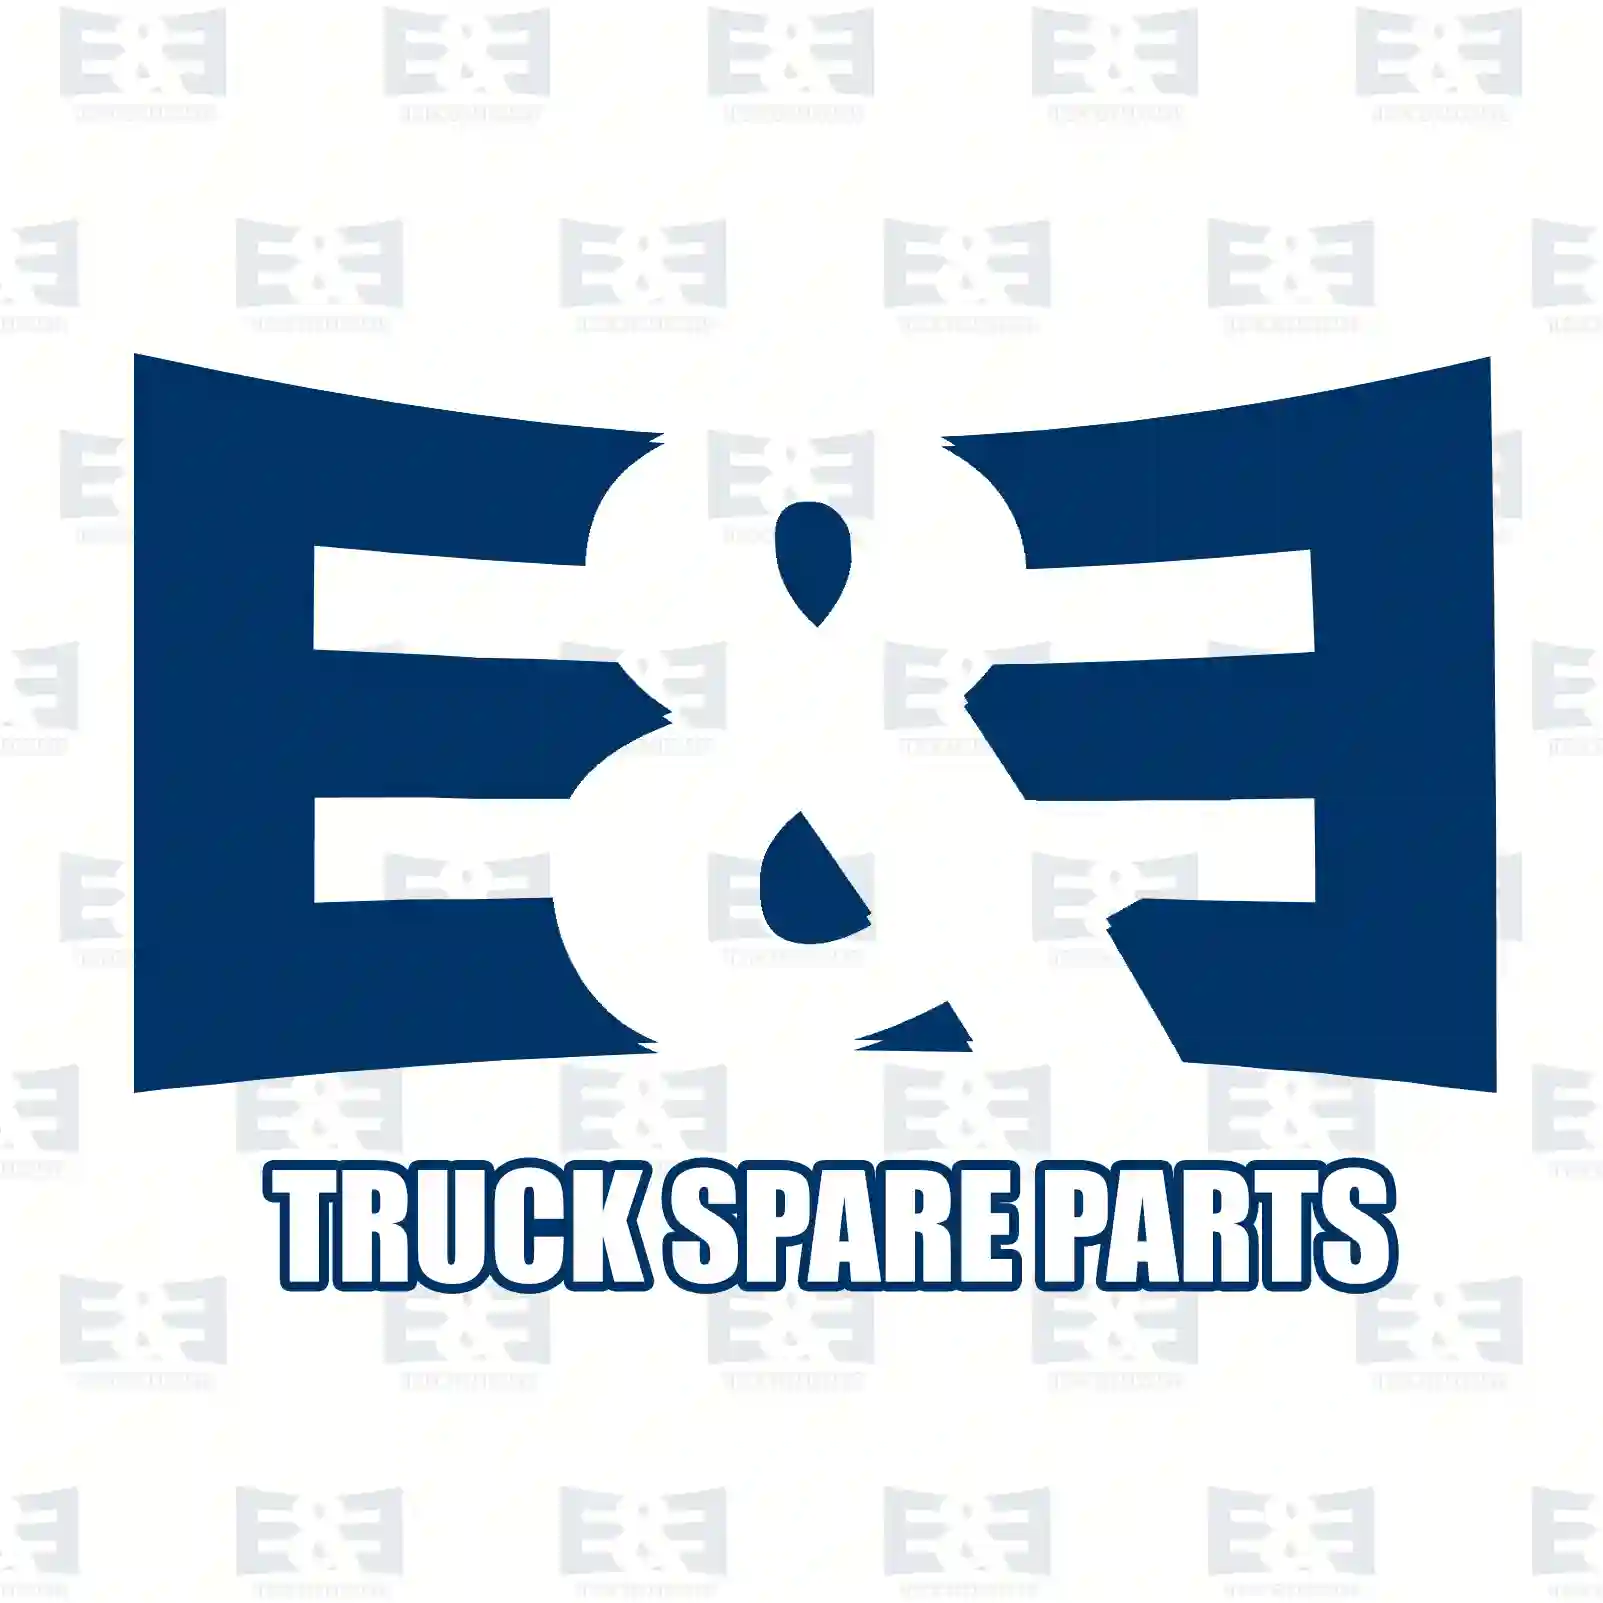 Clutch disc, 2E2289267, 0042505503, 0052501503, 0062503702, 0062503703, 0092502306, 0092502603, 0092502703, 0092502903, 009250290380, 0092503003, 0222501003 ||  2E2289267 E&E Truck Spare Parts | Truck Spare Parts, Auotomotive Spare Parts Clutch disc, 2E2289267, 0042505503, 0052501503, 0062503702, 0062503703, 0092502306, 0092502603, 0092502703, 0092502903, 009250290380, 0092503003, 0222501003 ||  2E2289267 E&E Truck Spare Parts | Truck Spare Parts, Auotomotive Spare Parts